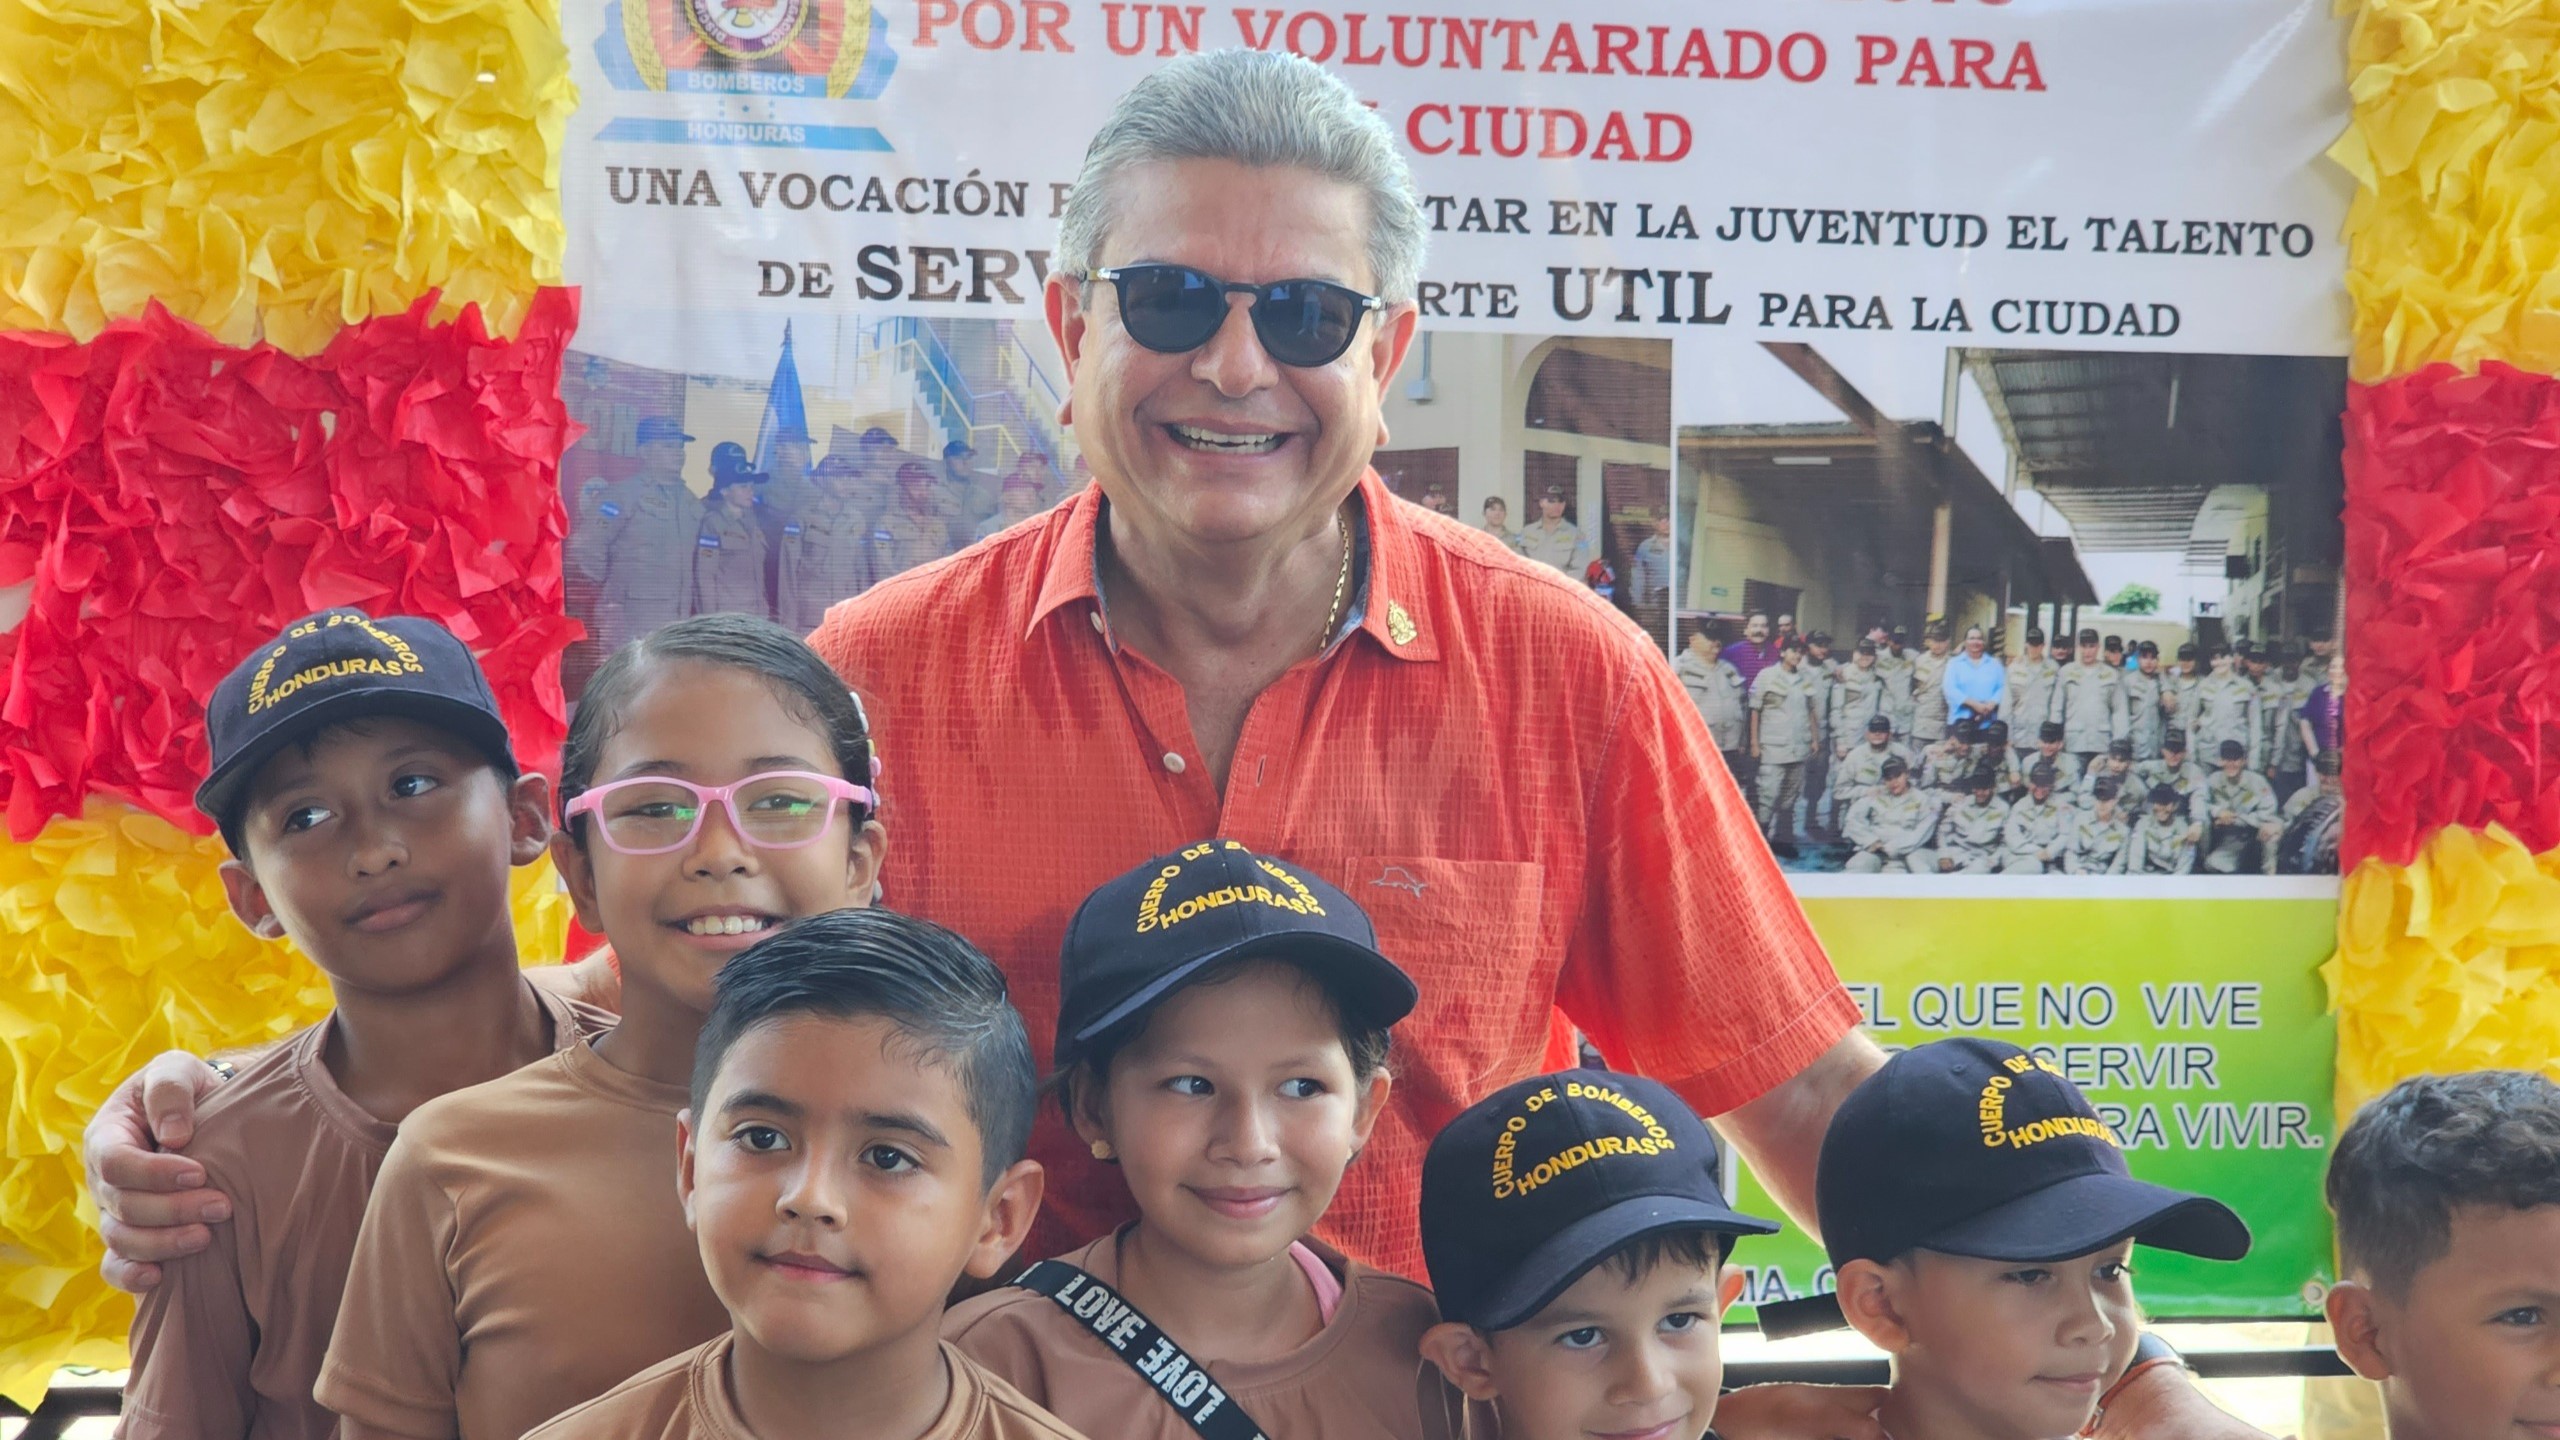 Ministro Tomás Vaquero insta a jóvenes a participar activamente en el voluntariado